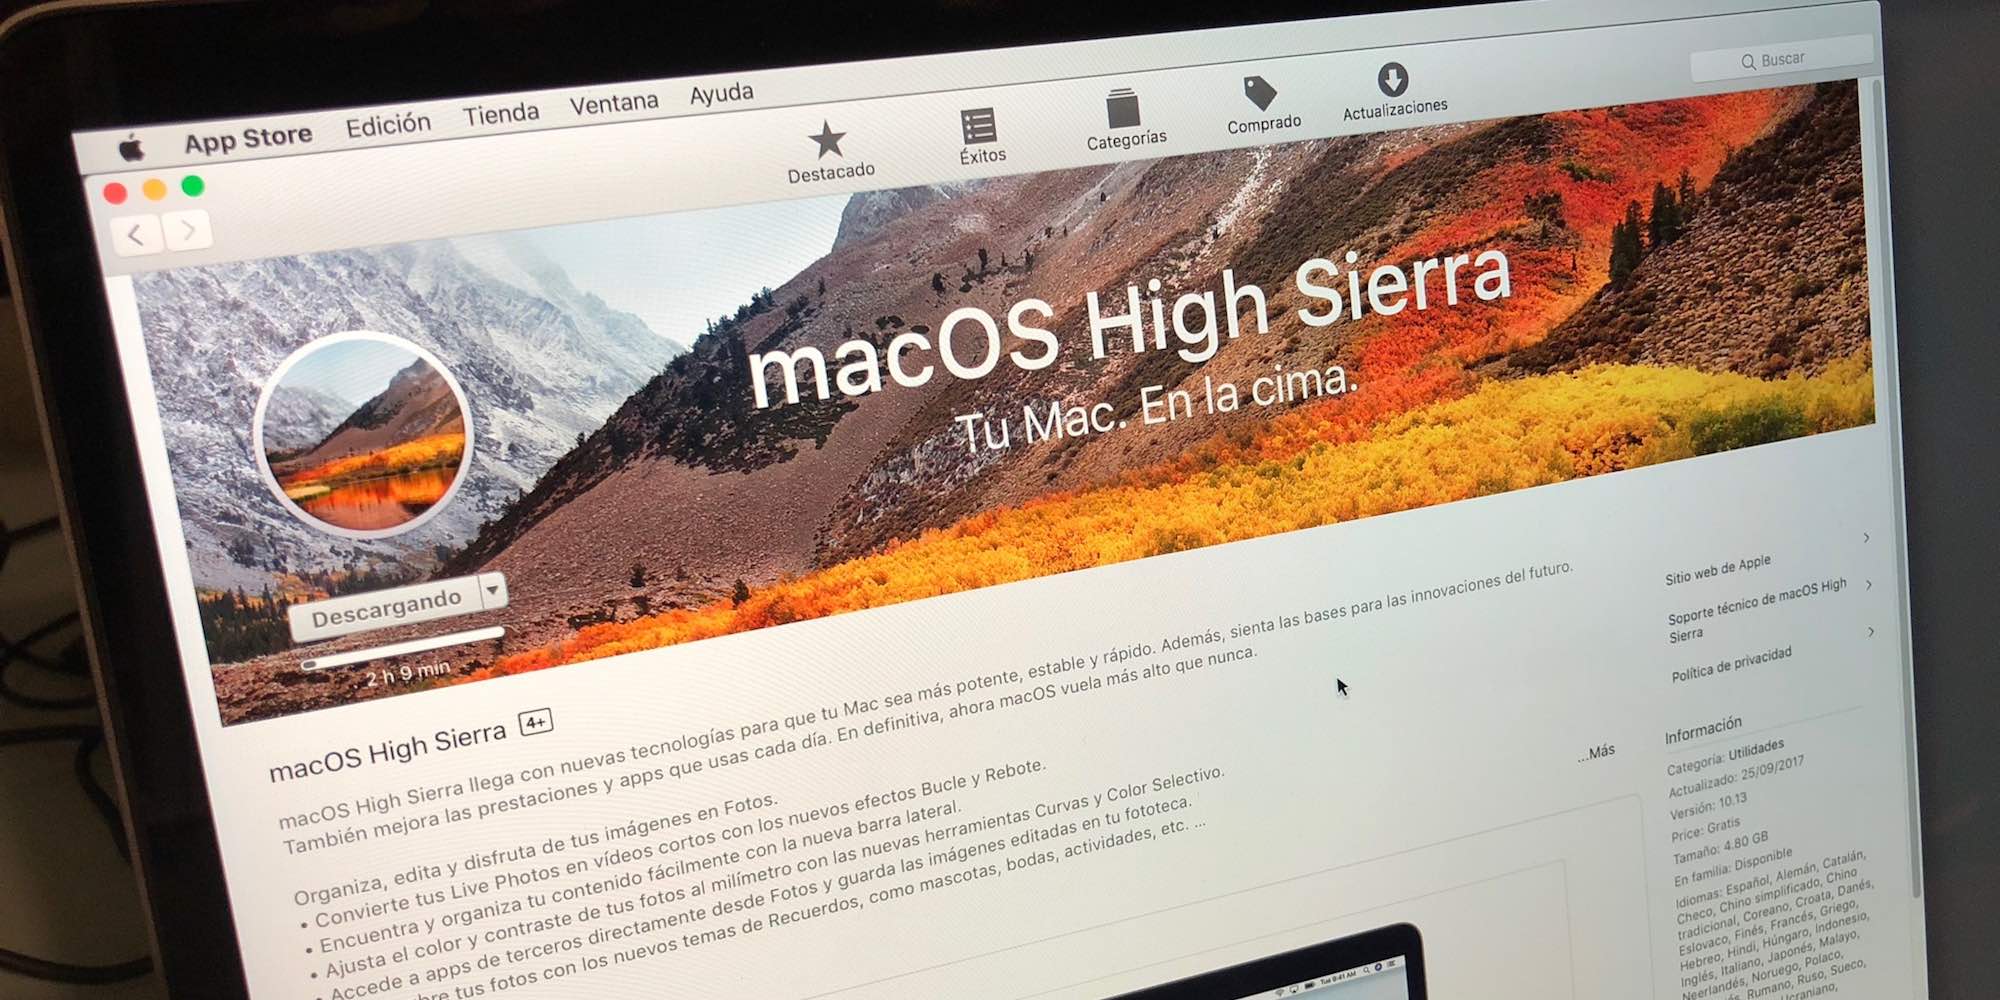 Mac OS Sierra ISO descargar para VMware